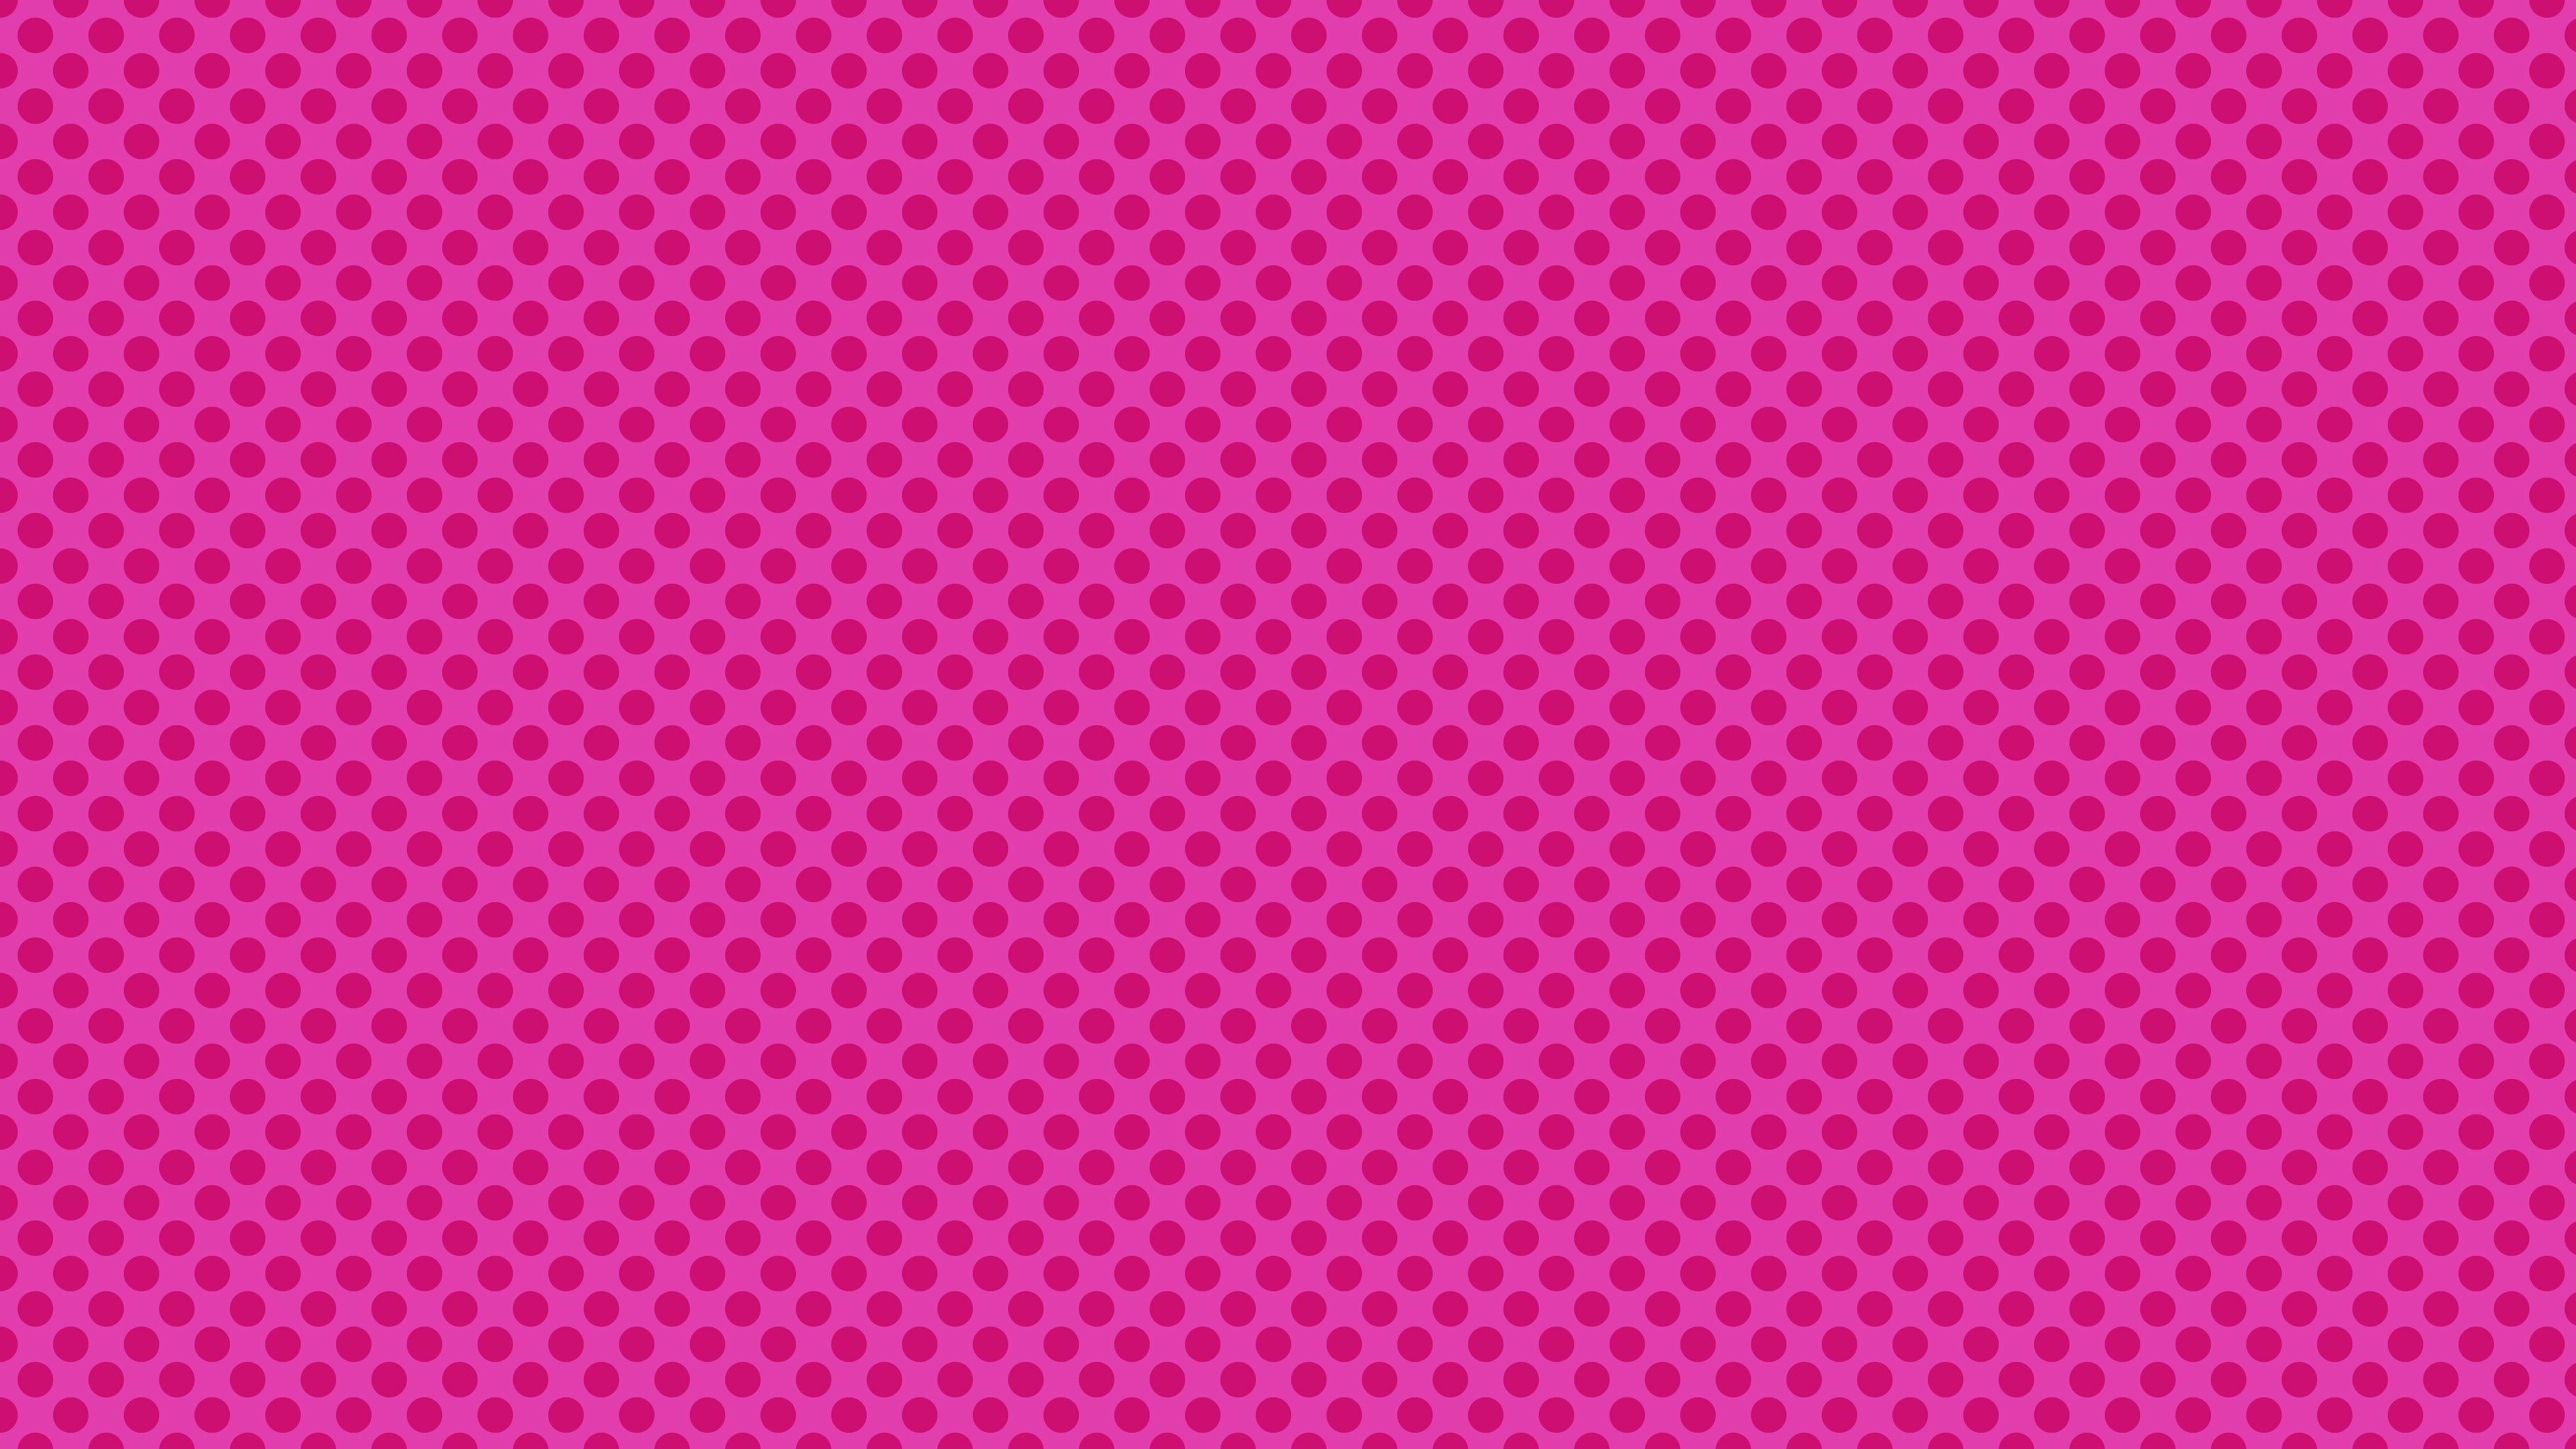 Ben Day Dots Pink, by Studio Ten Design